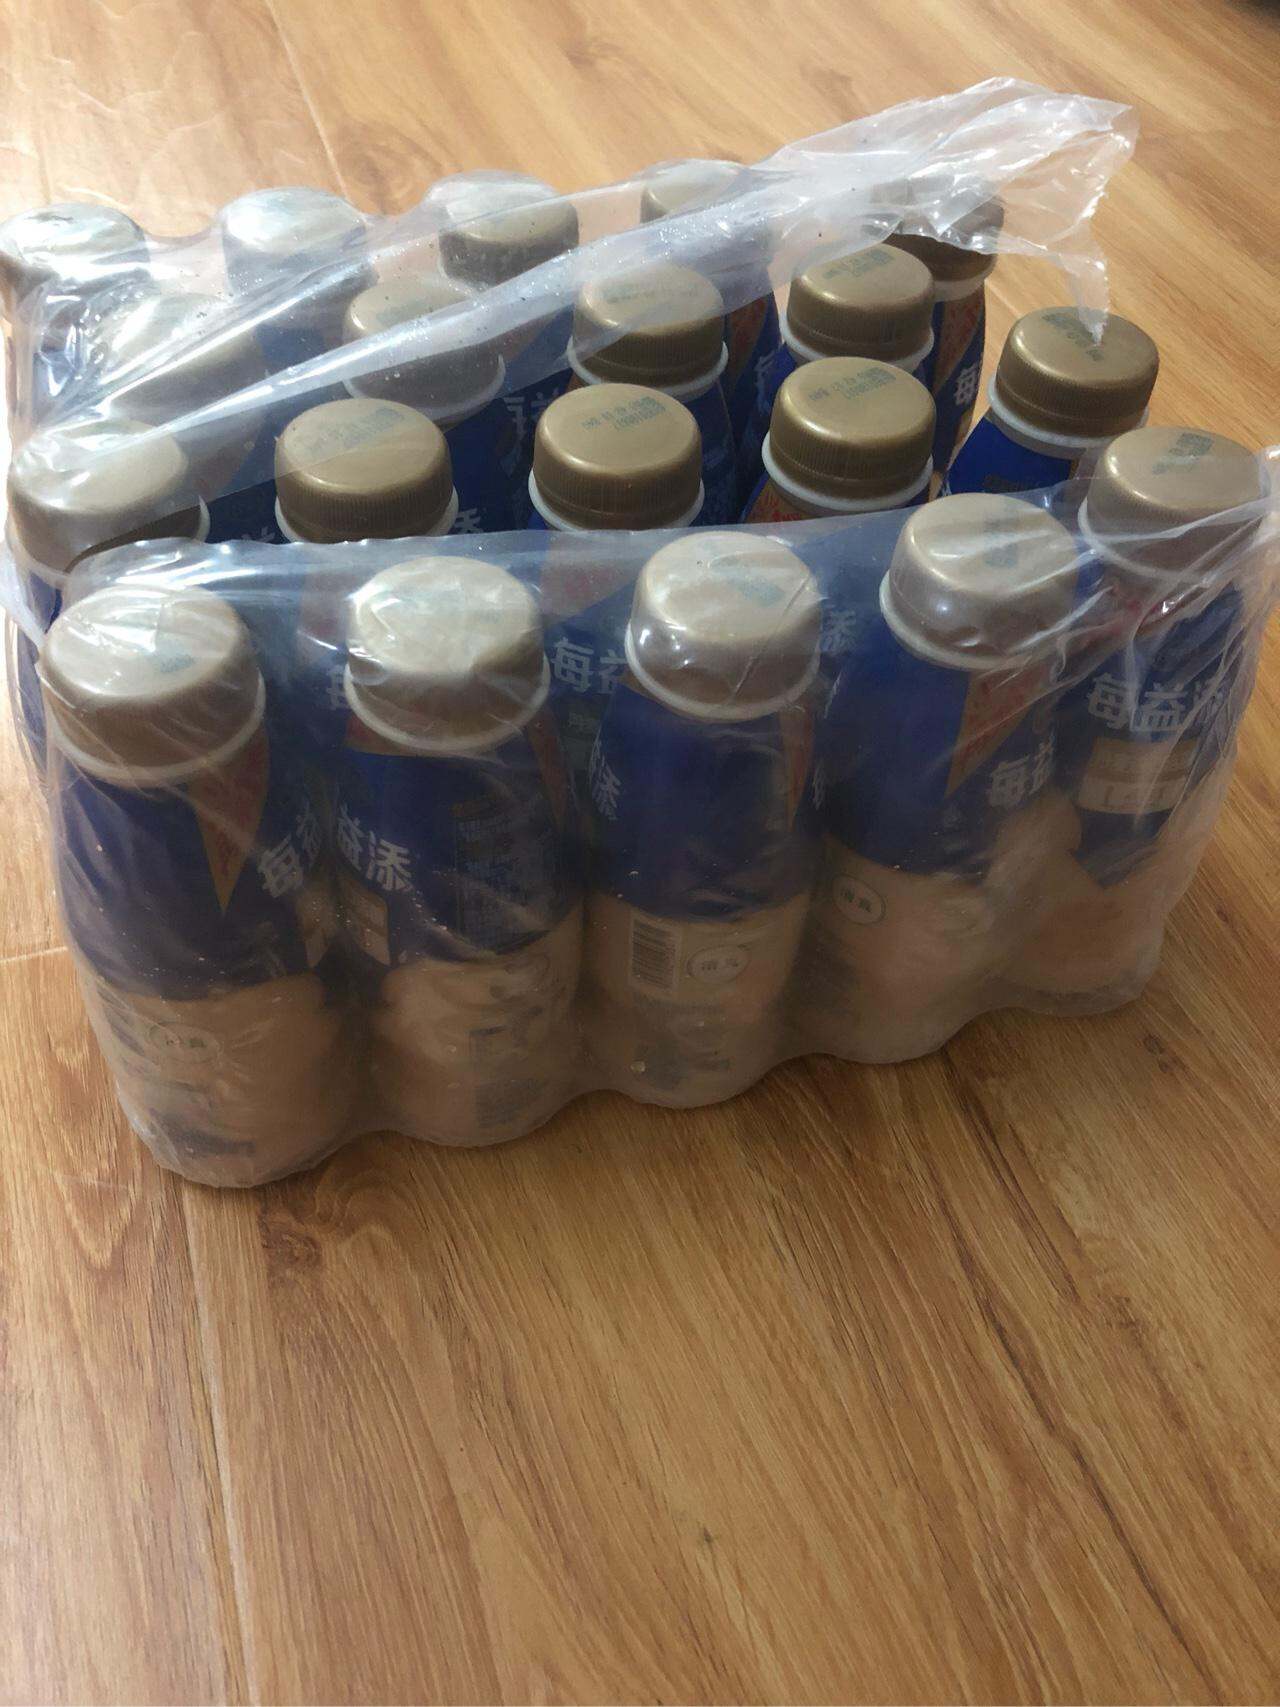 我买的伊利每益添乳酸菌饮品一共19瓶,我刚开